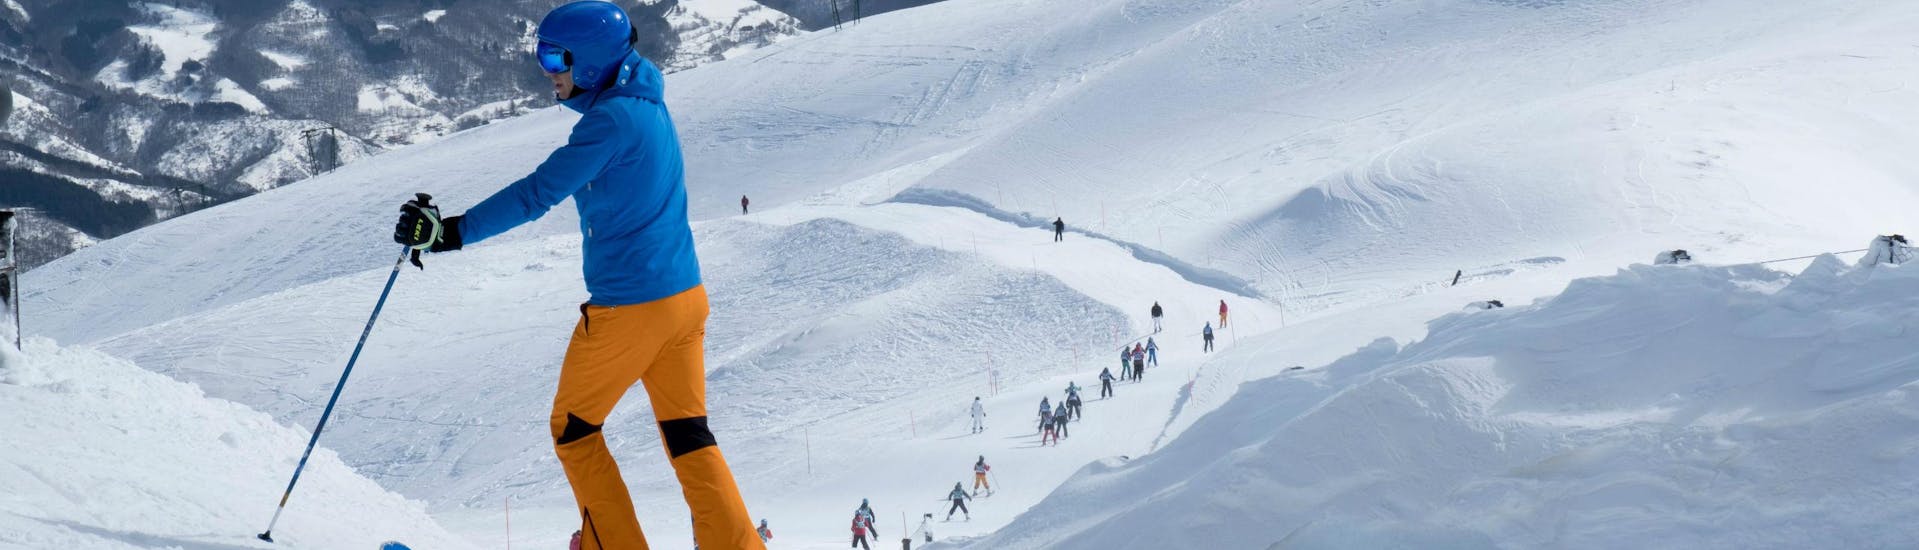 Uno sciatore ammira le piste del comprensorio sciistico di Abetone, dove le scuole di sci locali offrono una grande varietà di lezioni di sci per tutte le età e i livelli.